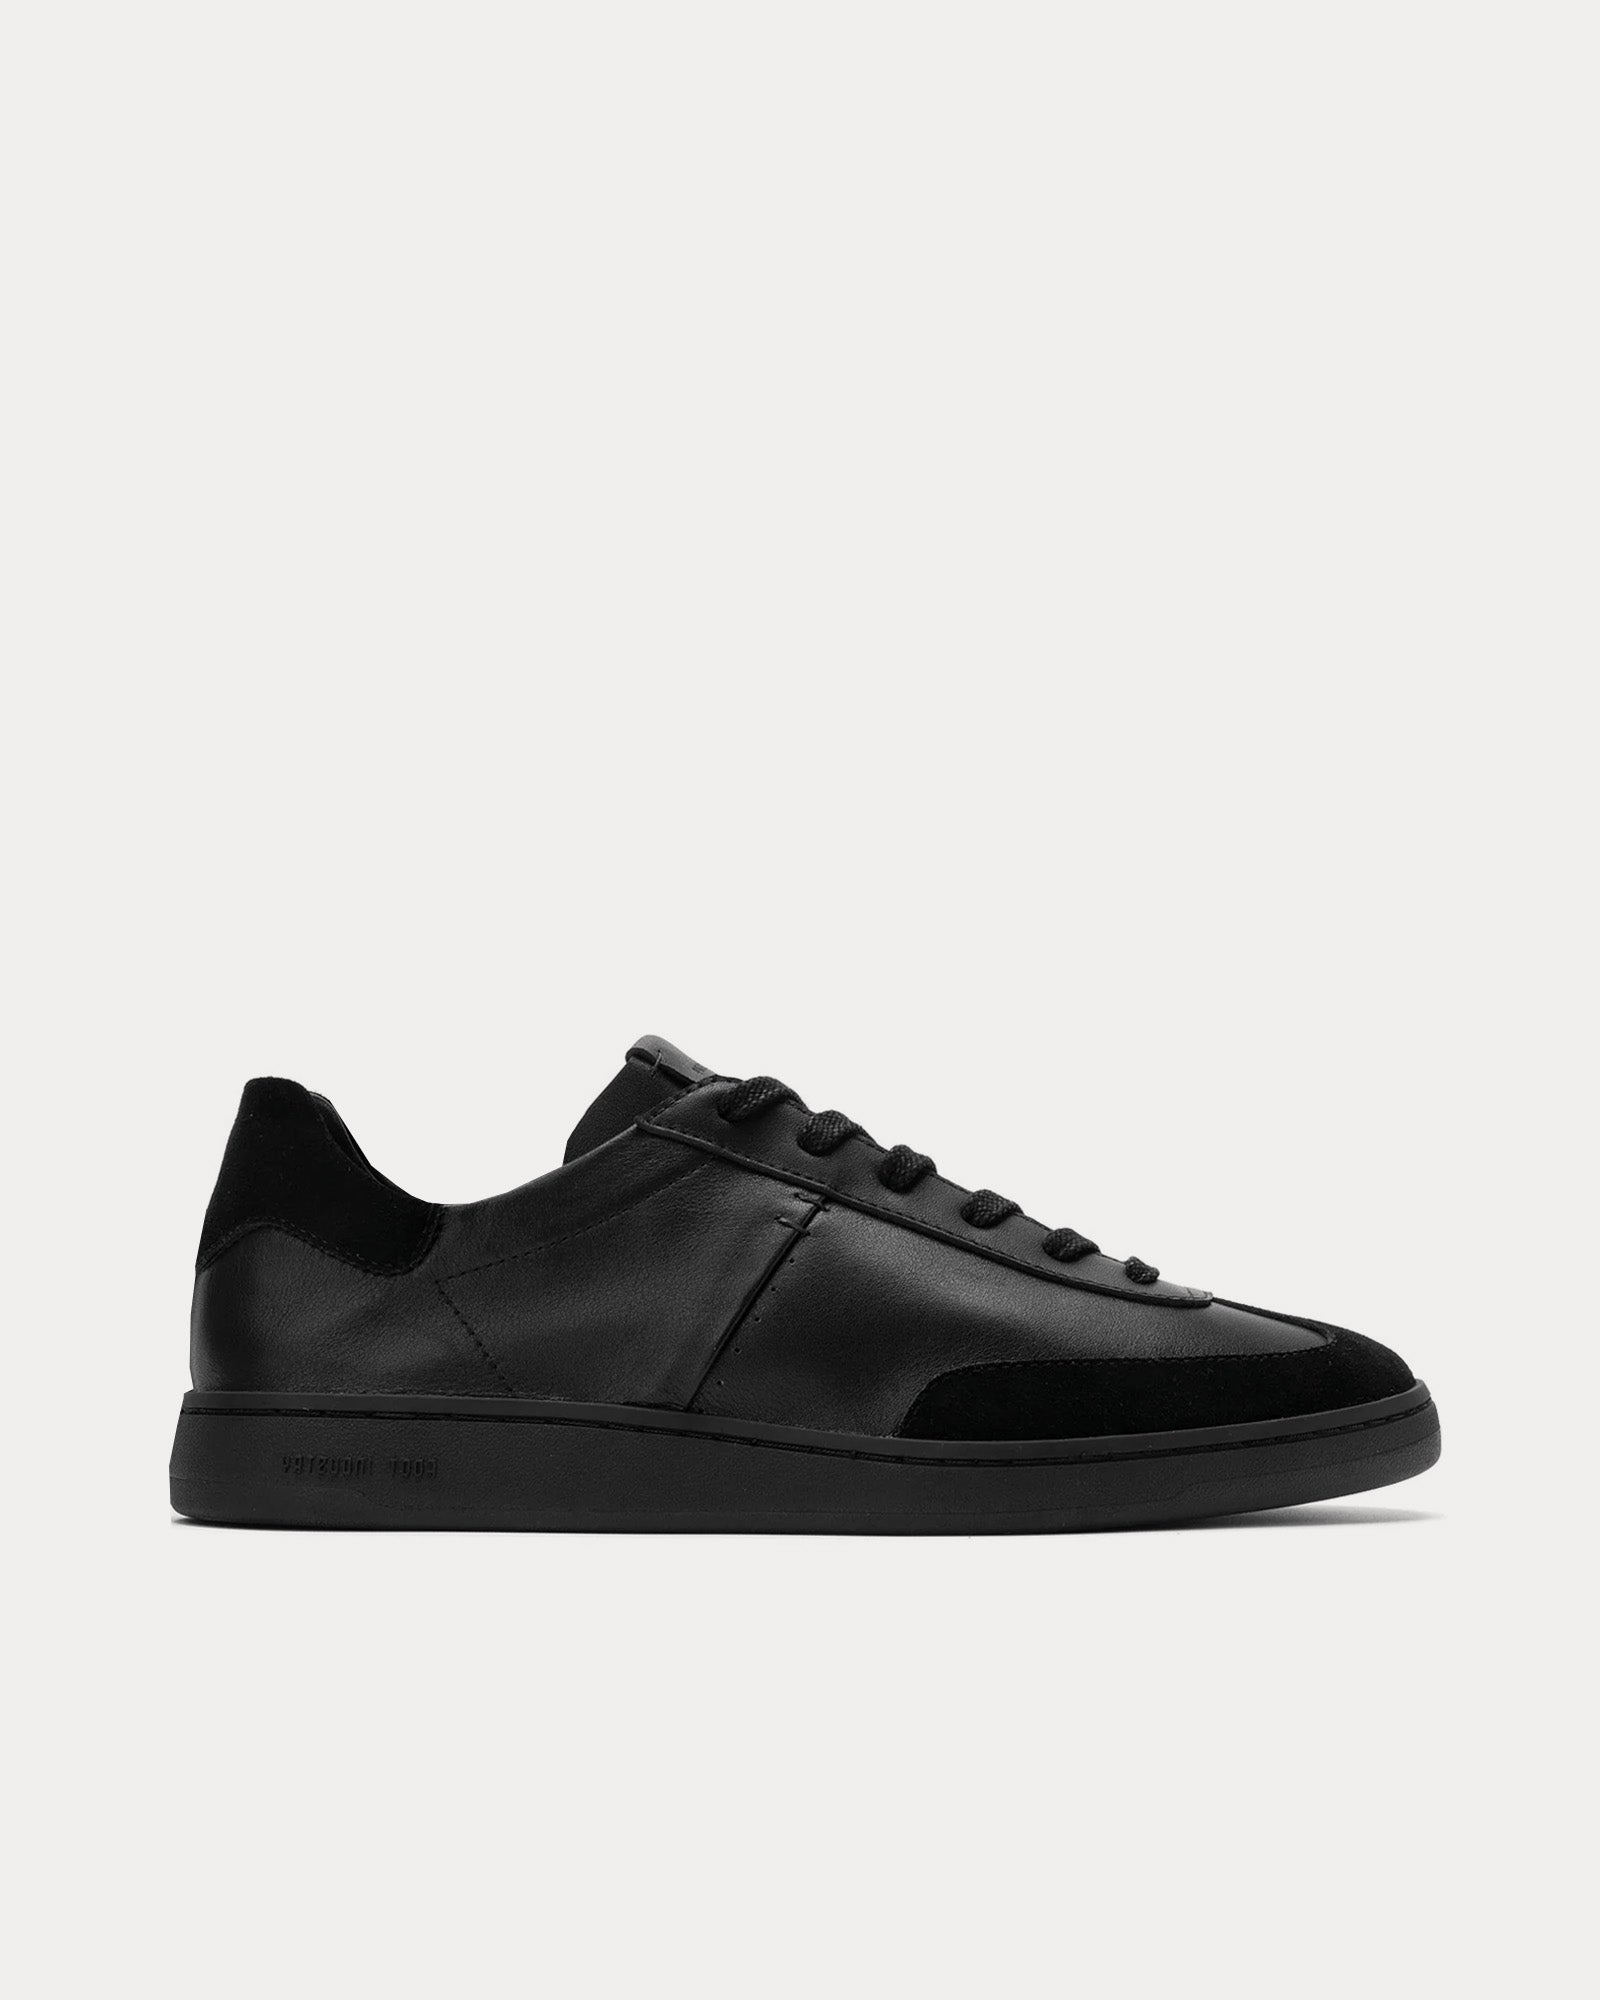 Foot Industry - GAT OP Leather Black Low Top Sneakers